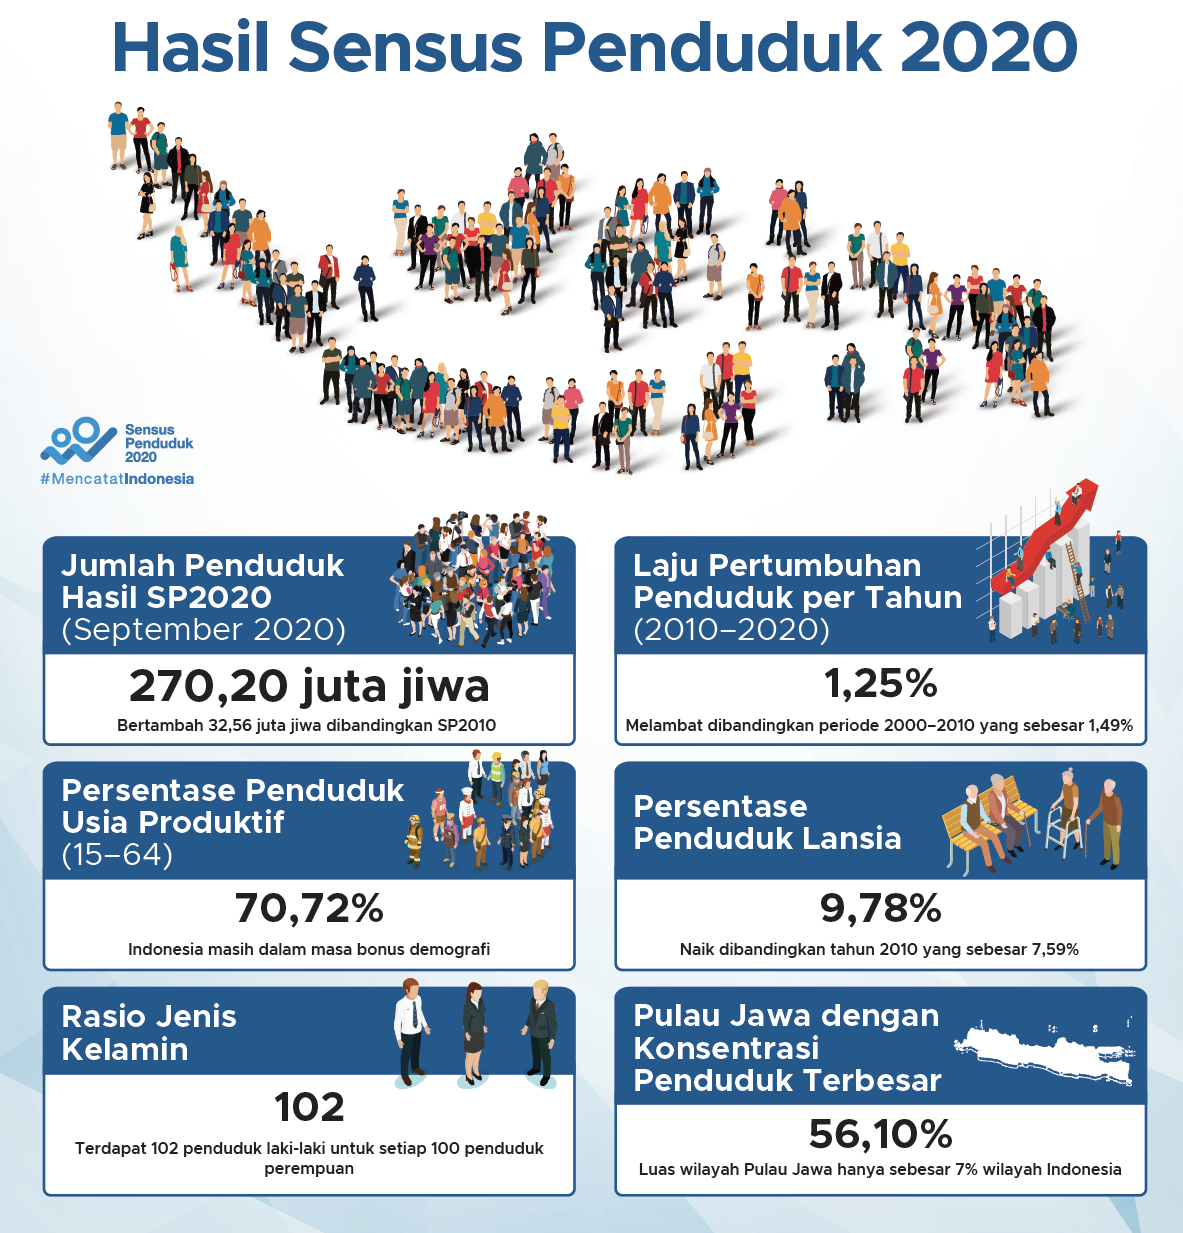 Indonesia Sedang Menikmati Bonus Demografi